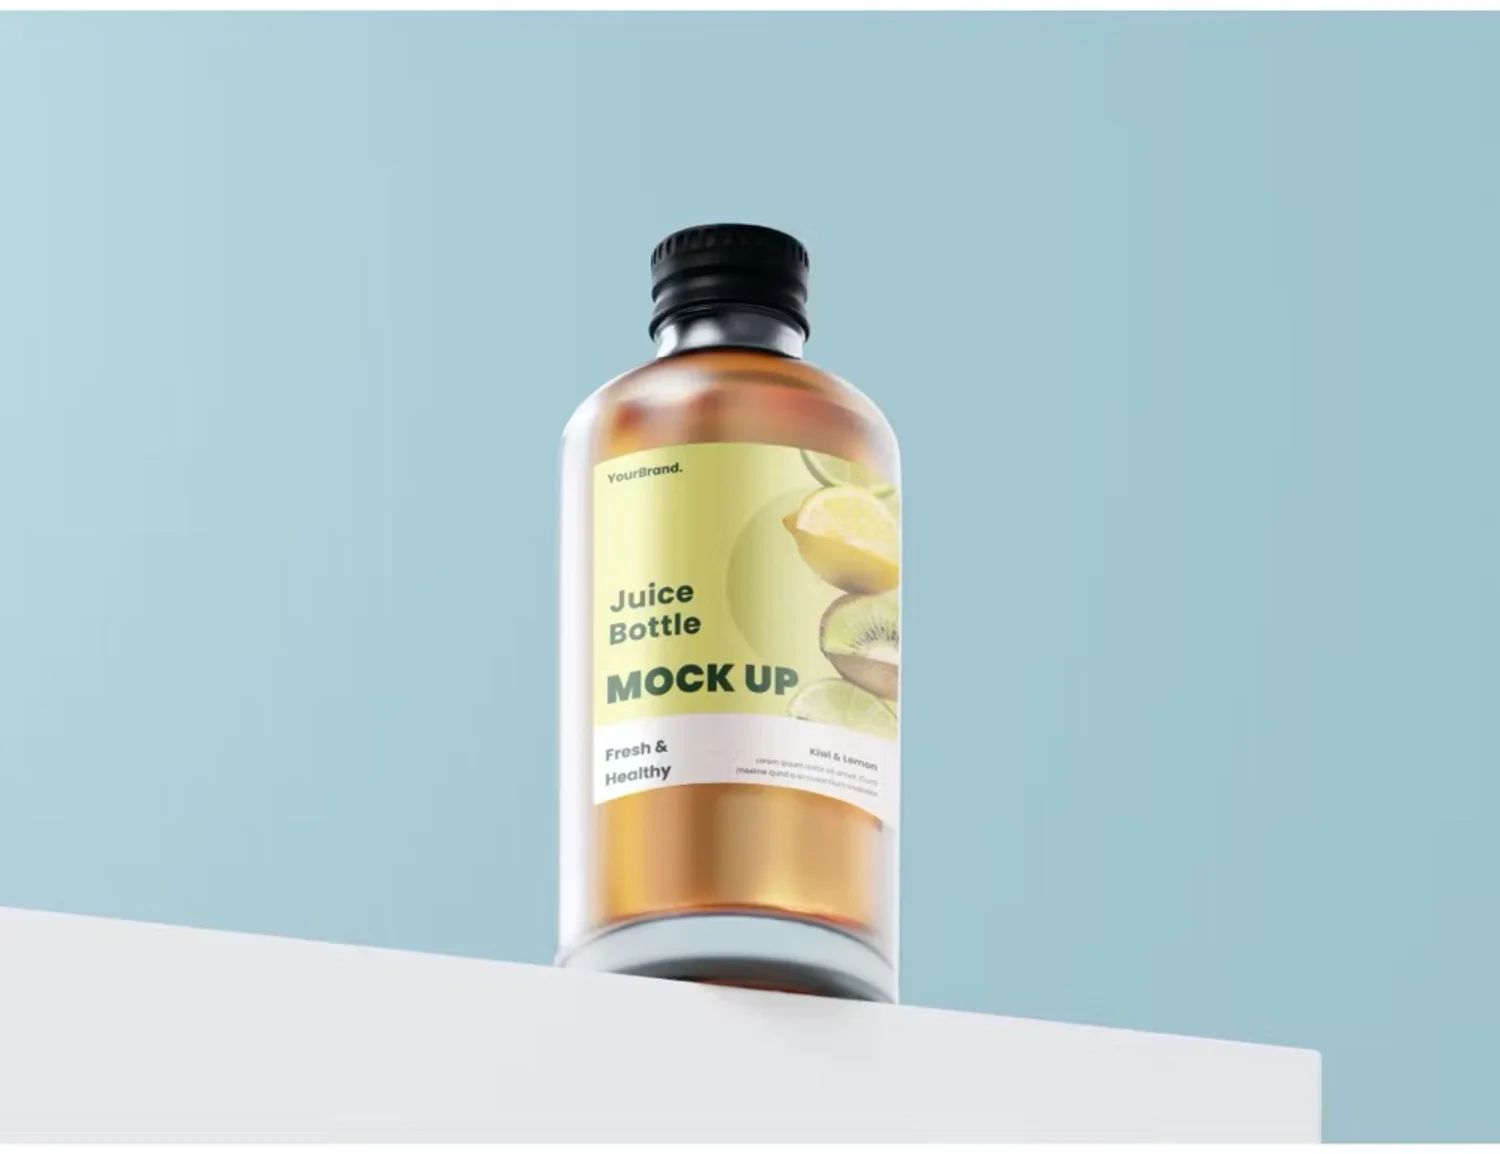 5112 玻璃磨砂质感果汁瓶包装设计展示psd样机素材 Juice Bottle Mock-ups@GOOODME.COM